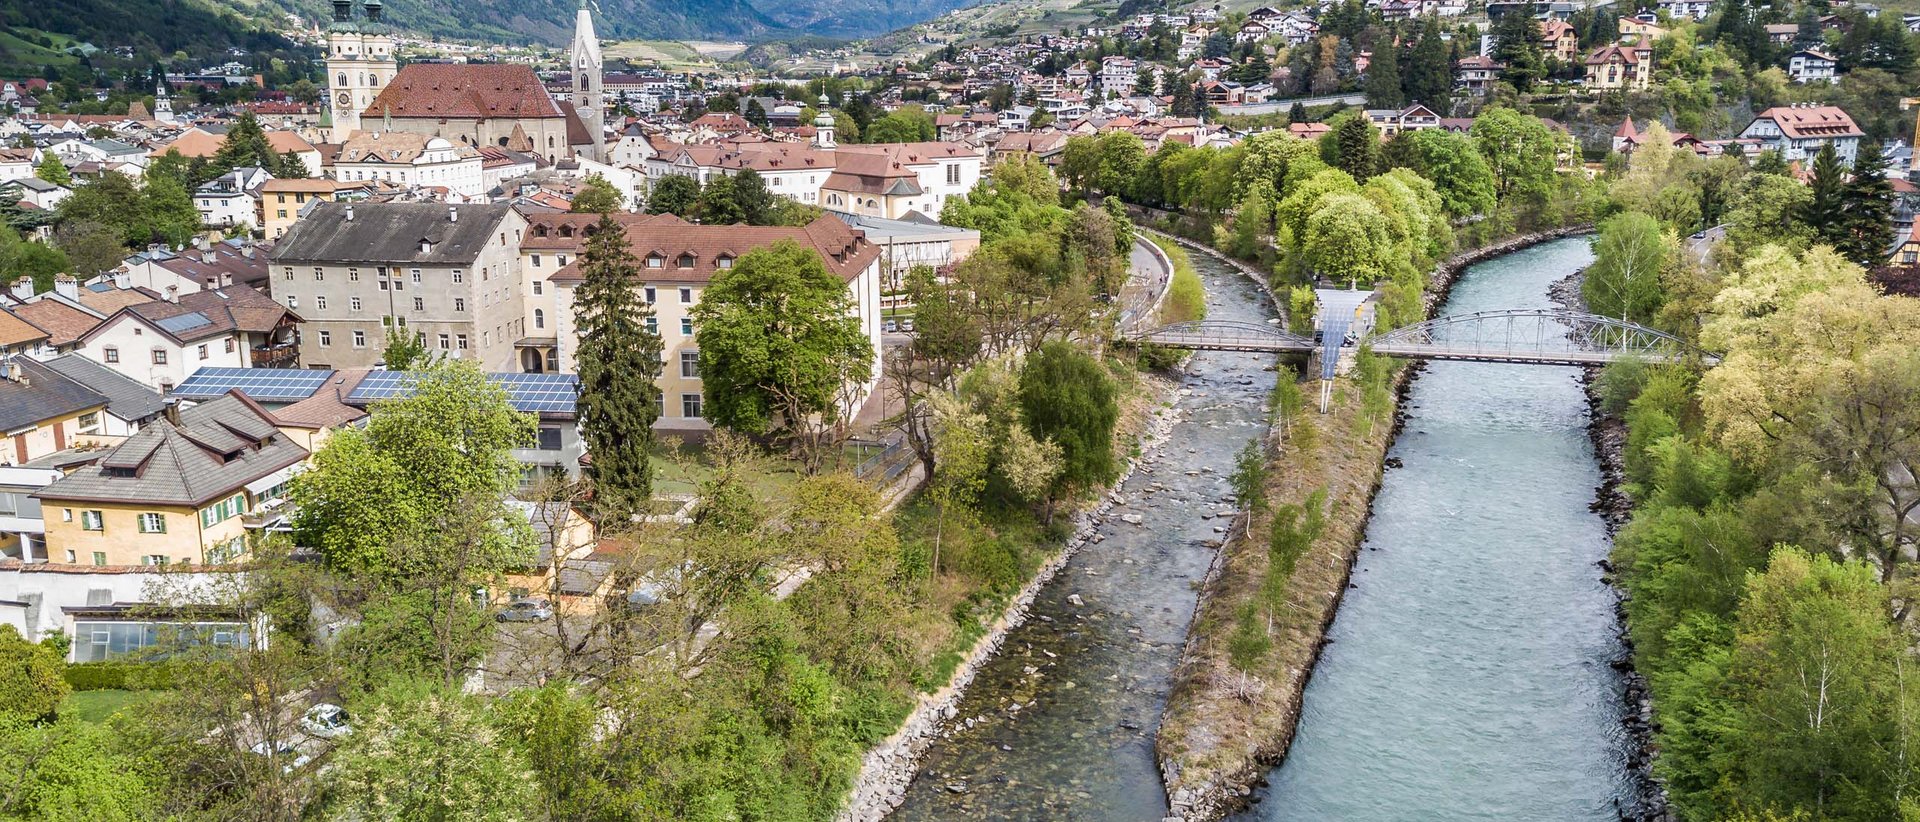 Veranstaltungen in Brixen – immer etwas los!